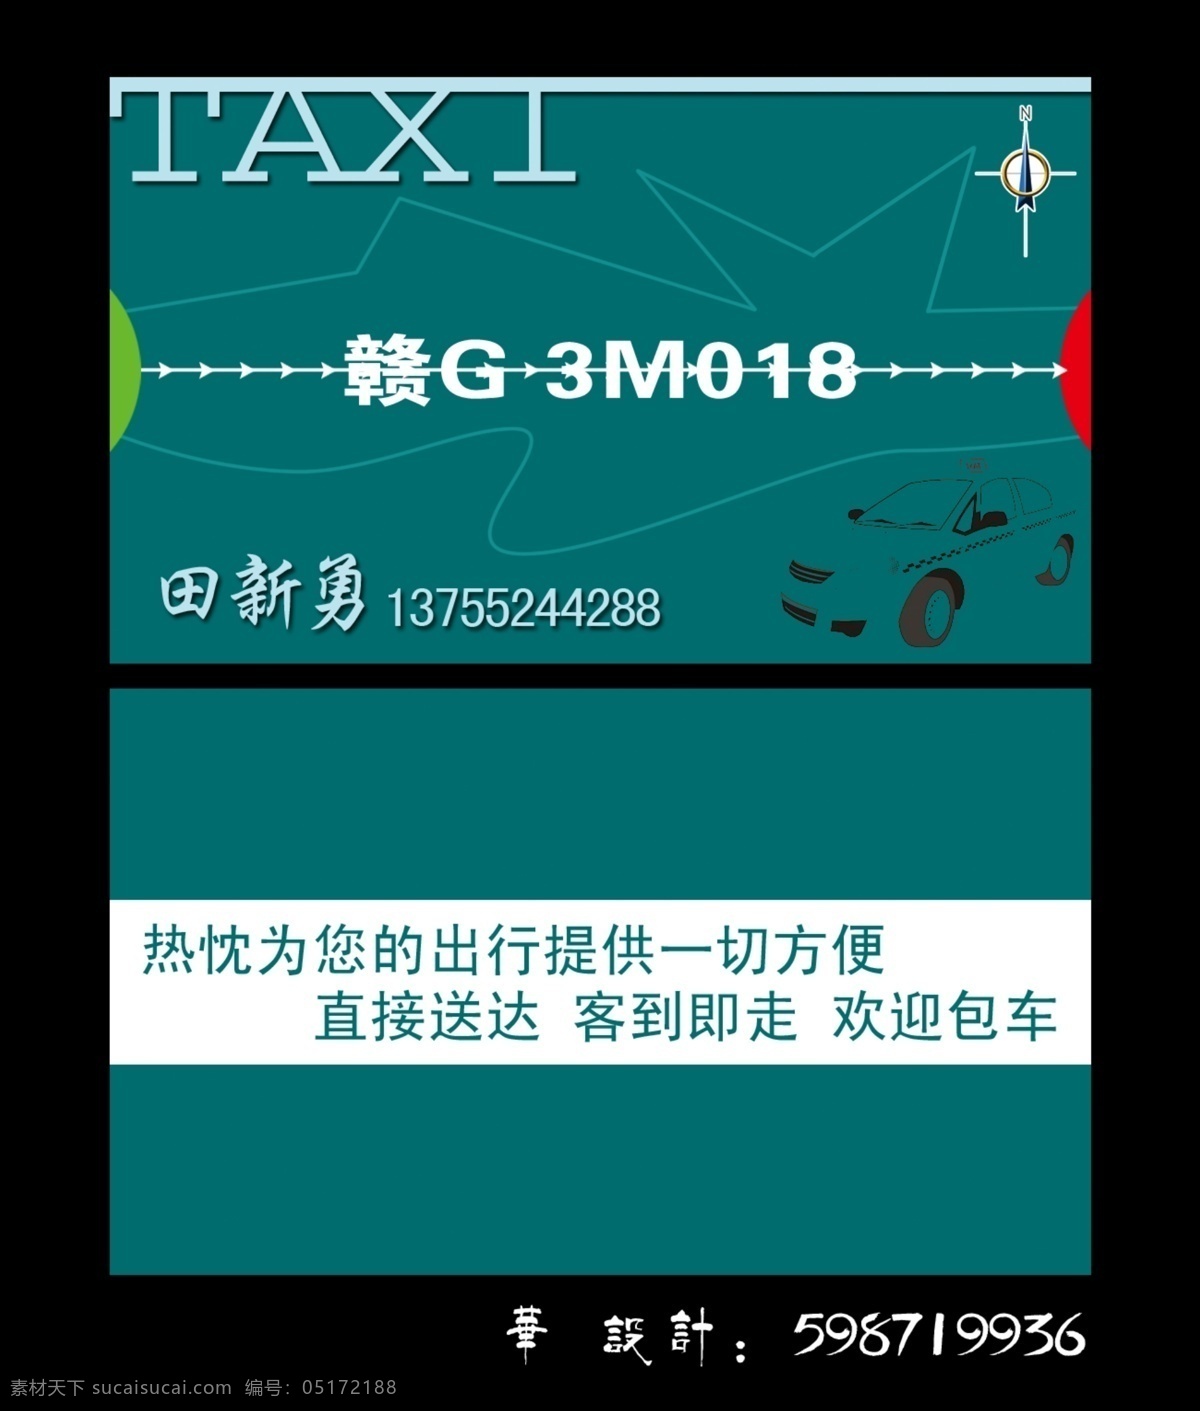 出租车 出租车名片 广告设计模板 红色 蓝色 绿色 名片 名片模板 taxi 指北针 线路 起点 终点 墨绿 名片设计 源文件 名片卡 广告设计名片